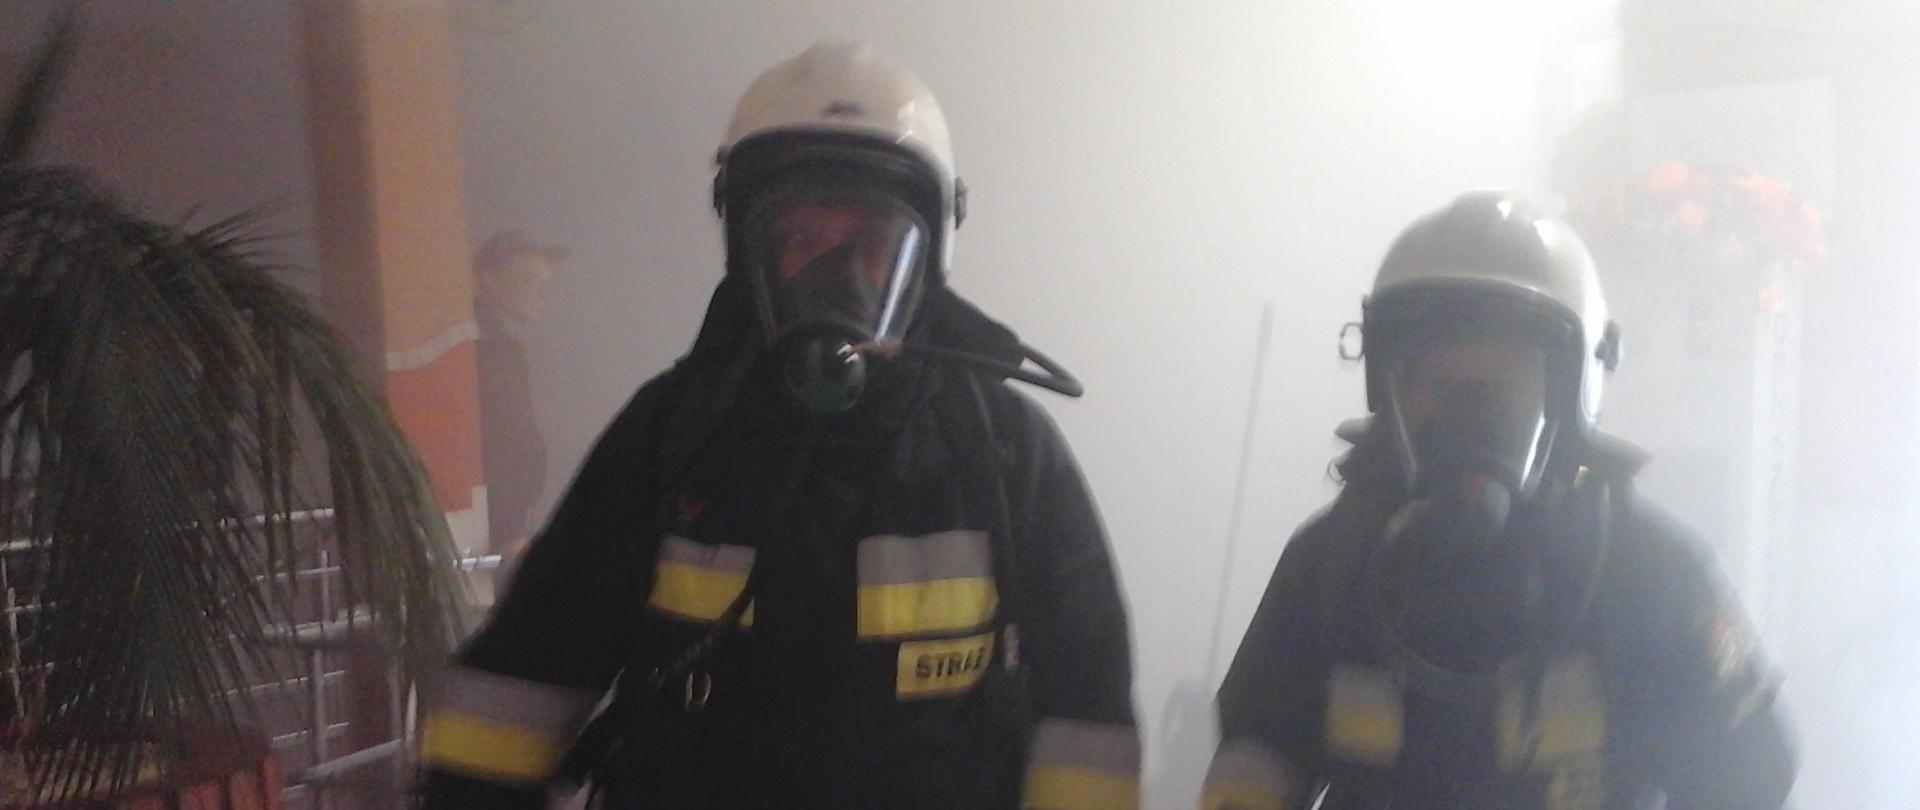 Ewakuacja pensjonariuszy- zadymienie pomieszczenie, strażacy pracujący w sprzęcie ochrony układu oddechowego.